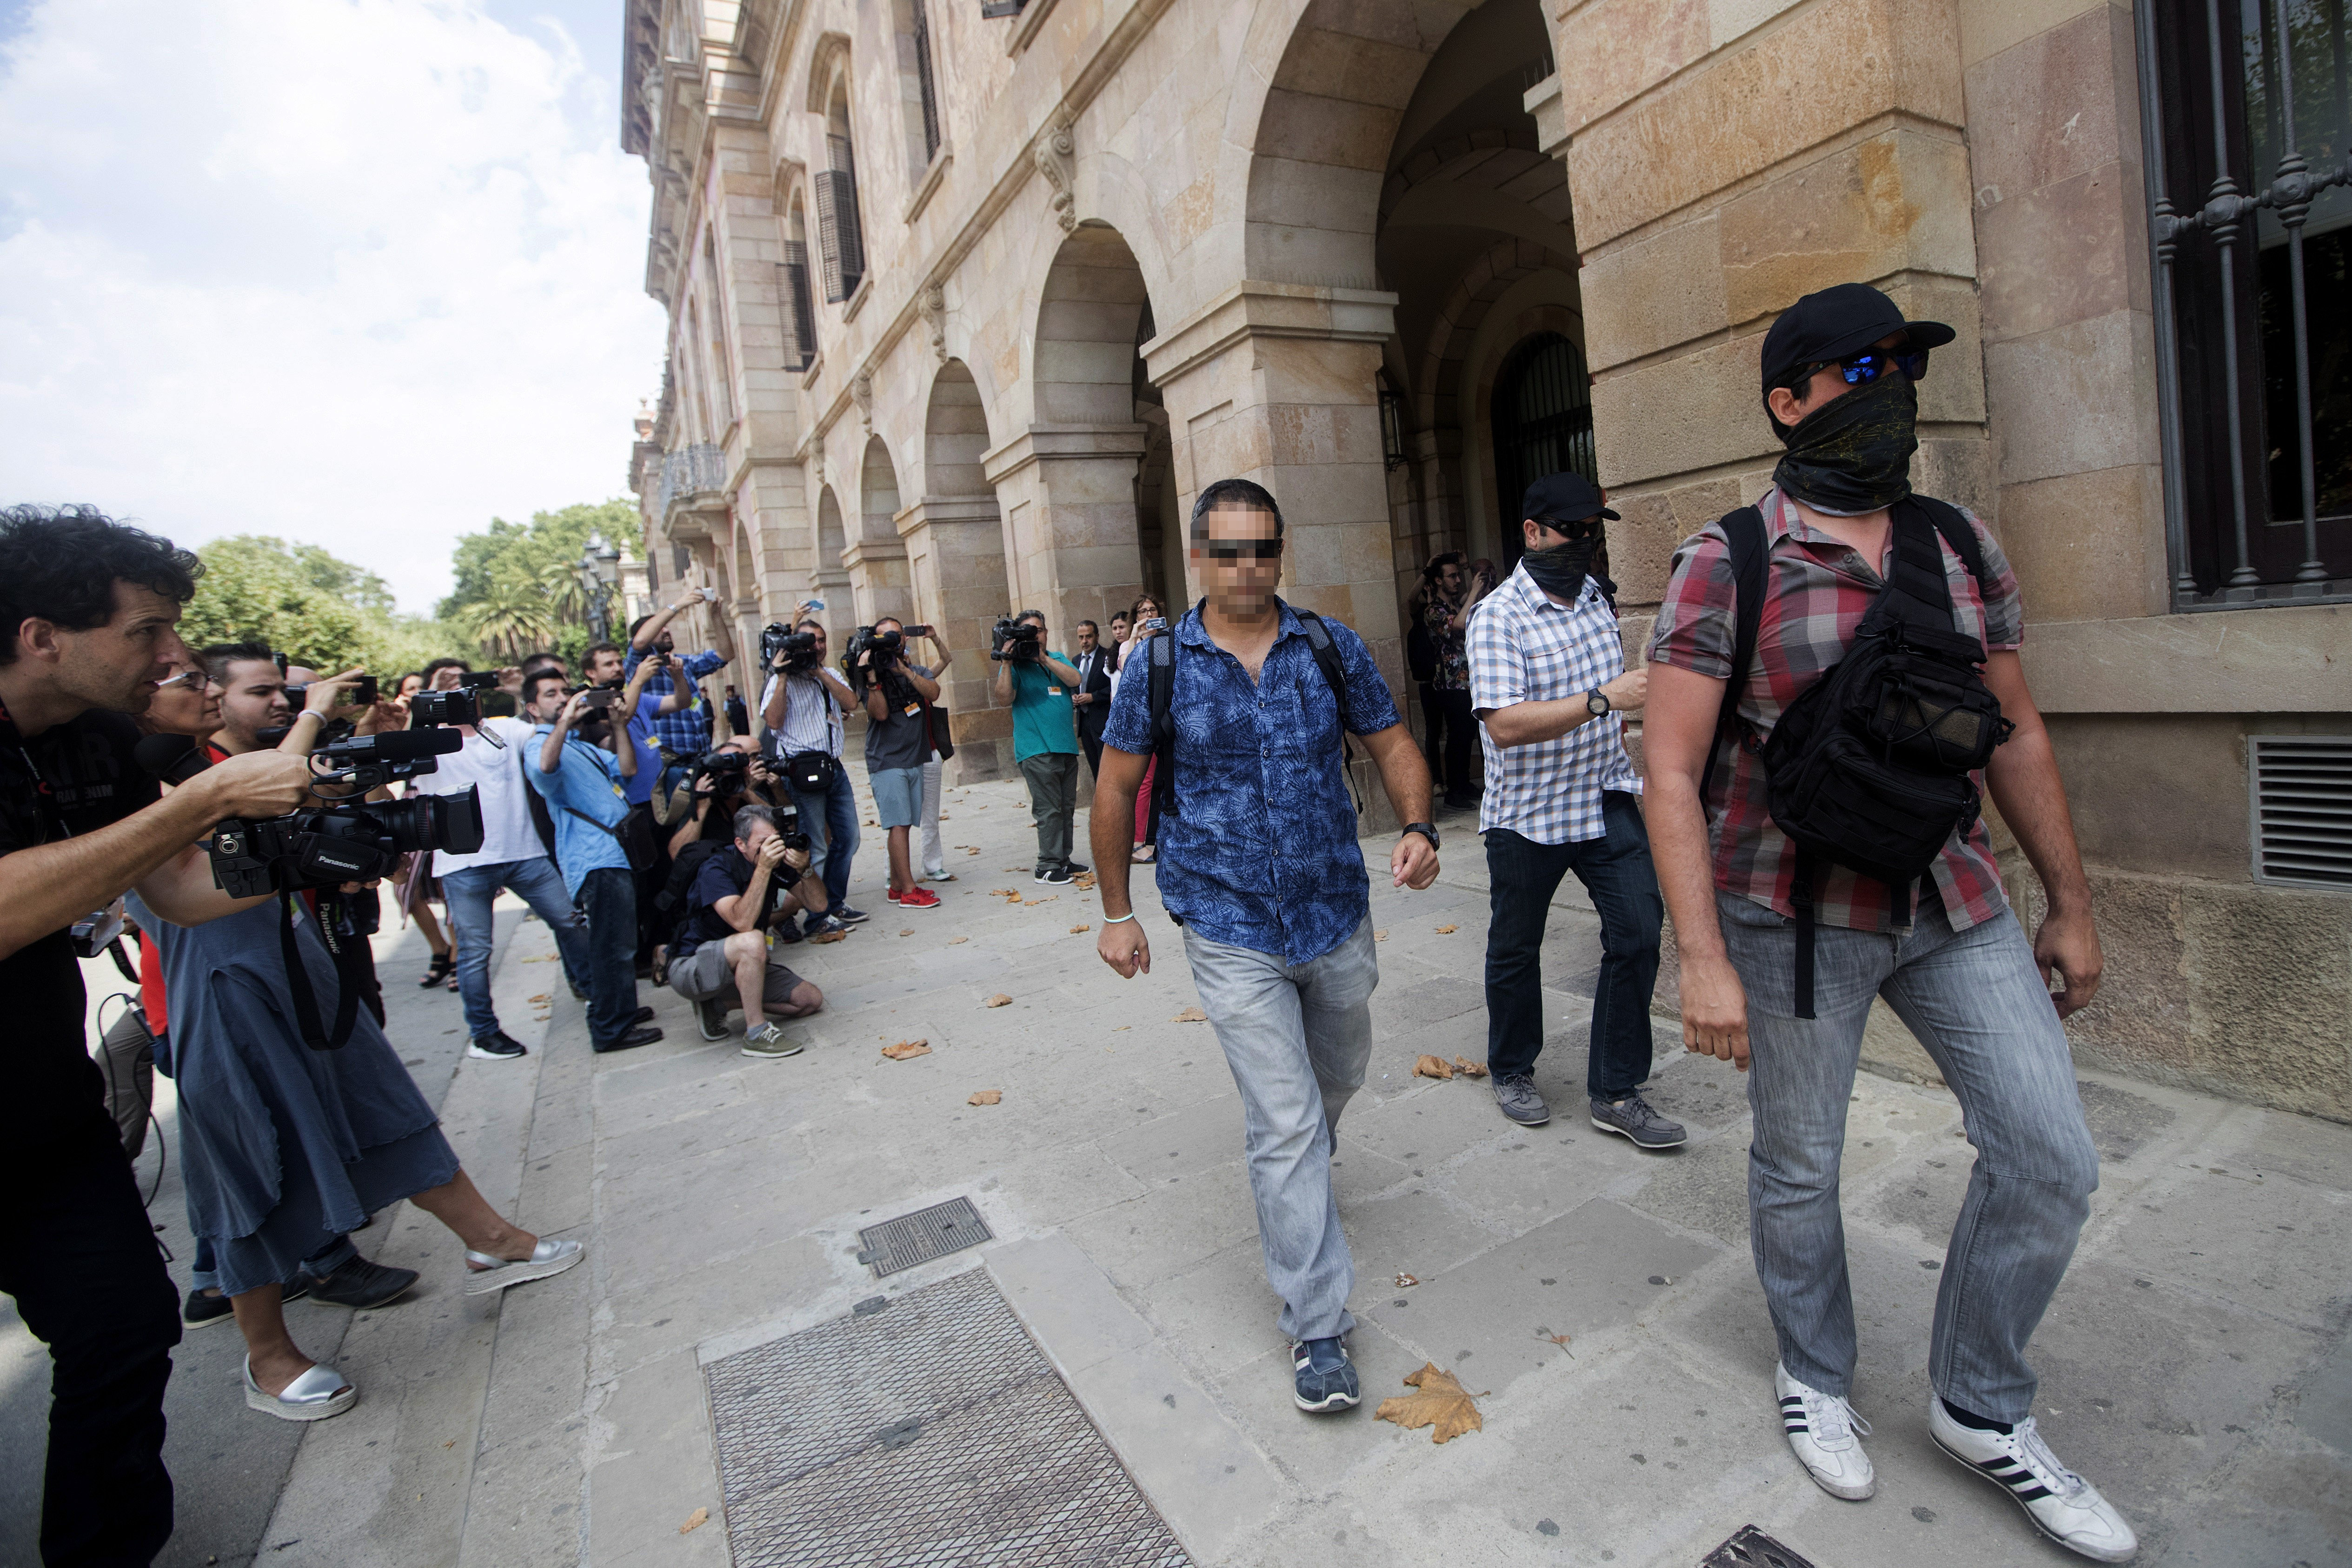 Agentes de la Guardia Civil a su salida de la sede de parlamento de Cataluña